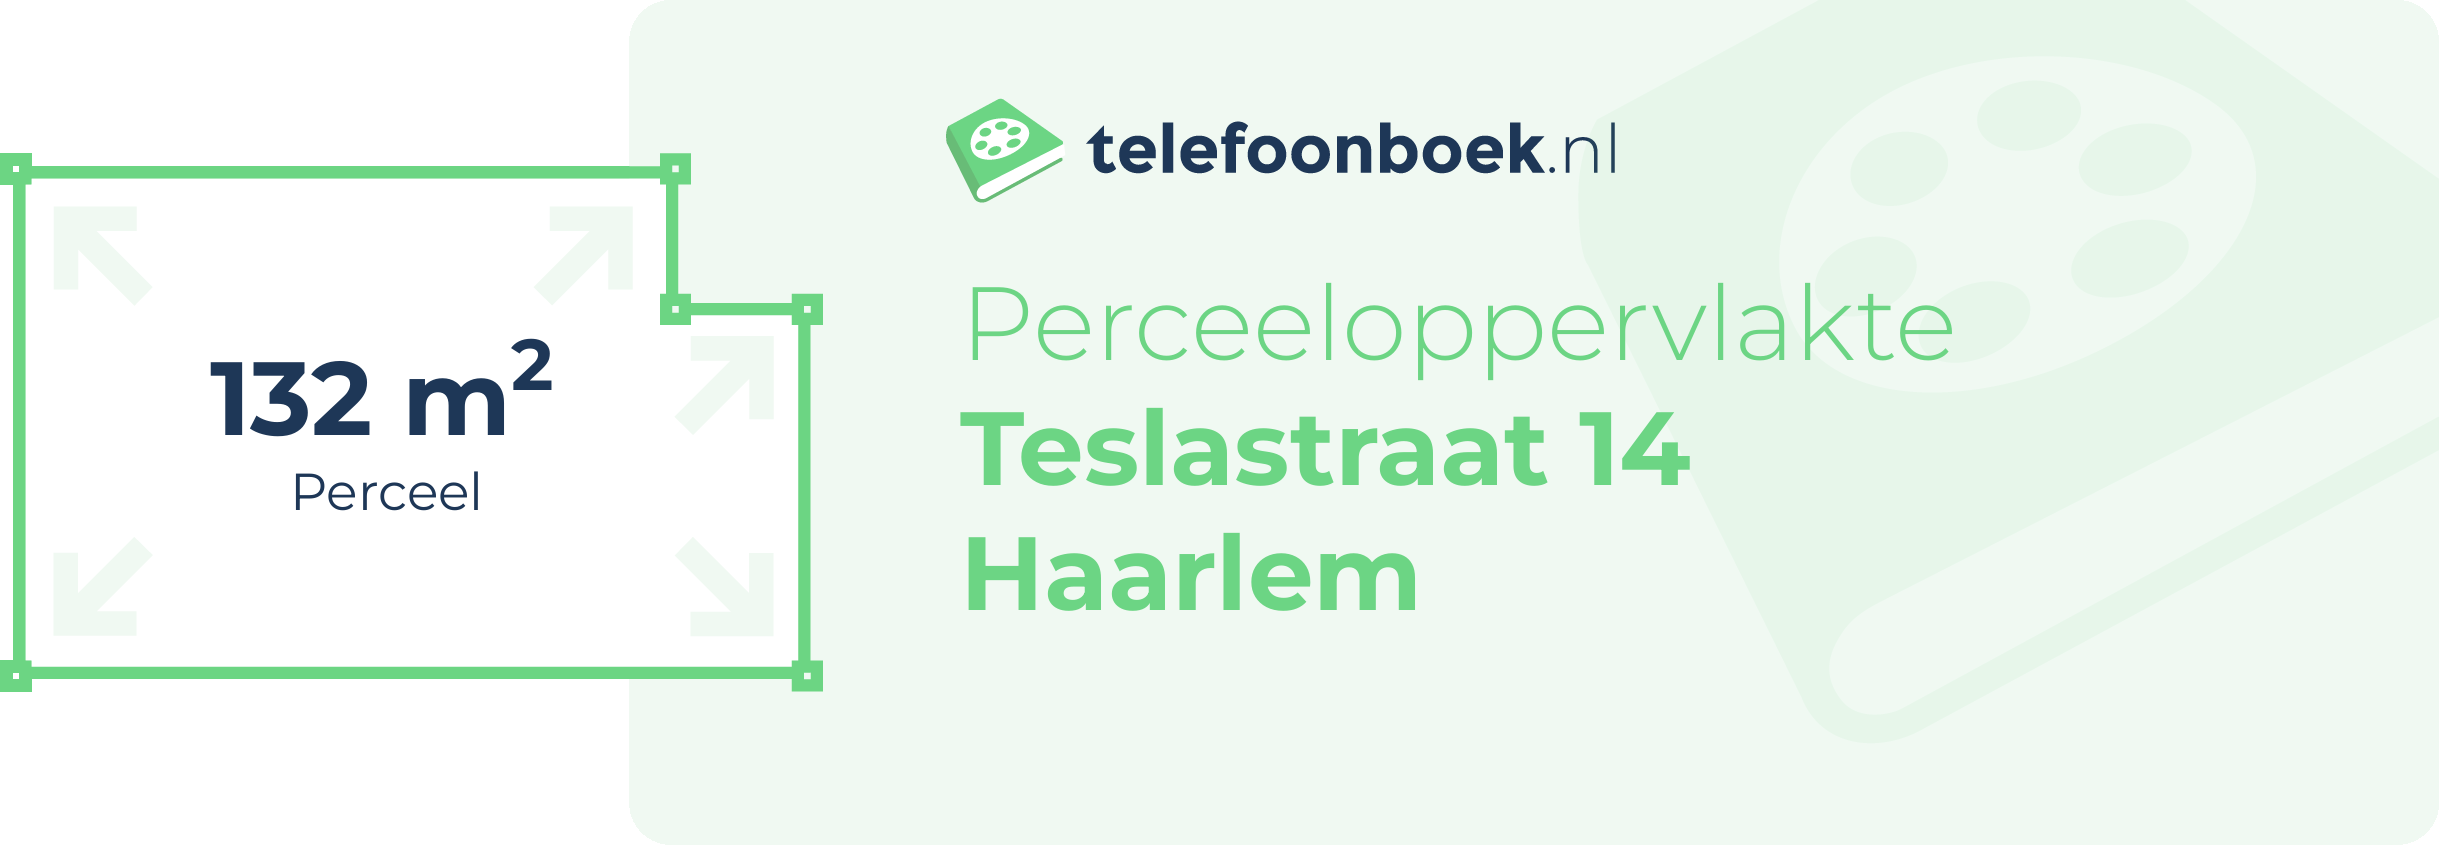 Perceeloppervlakte Teslastraat 14 Haarlem